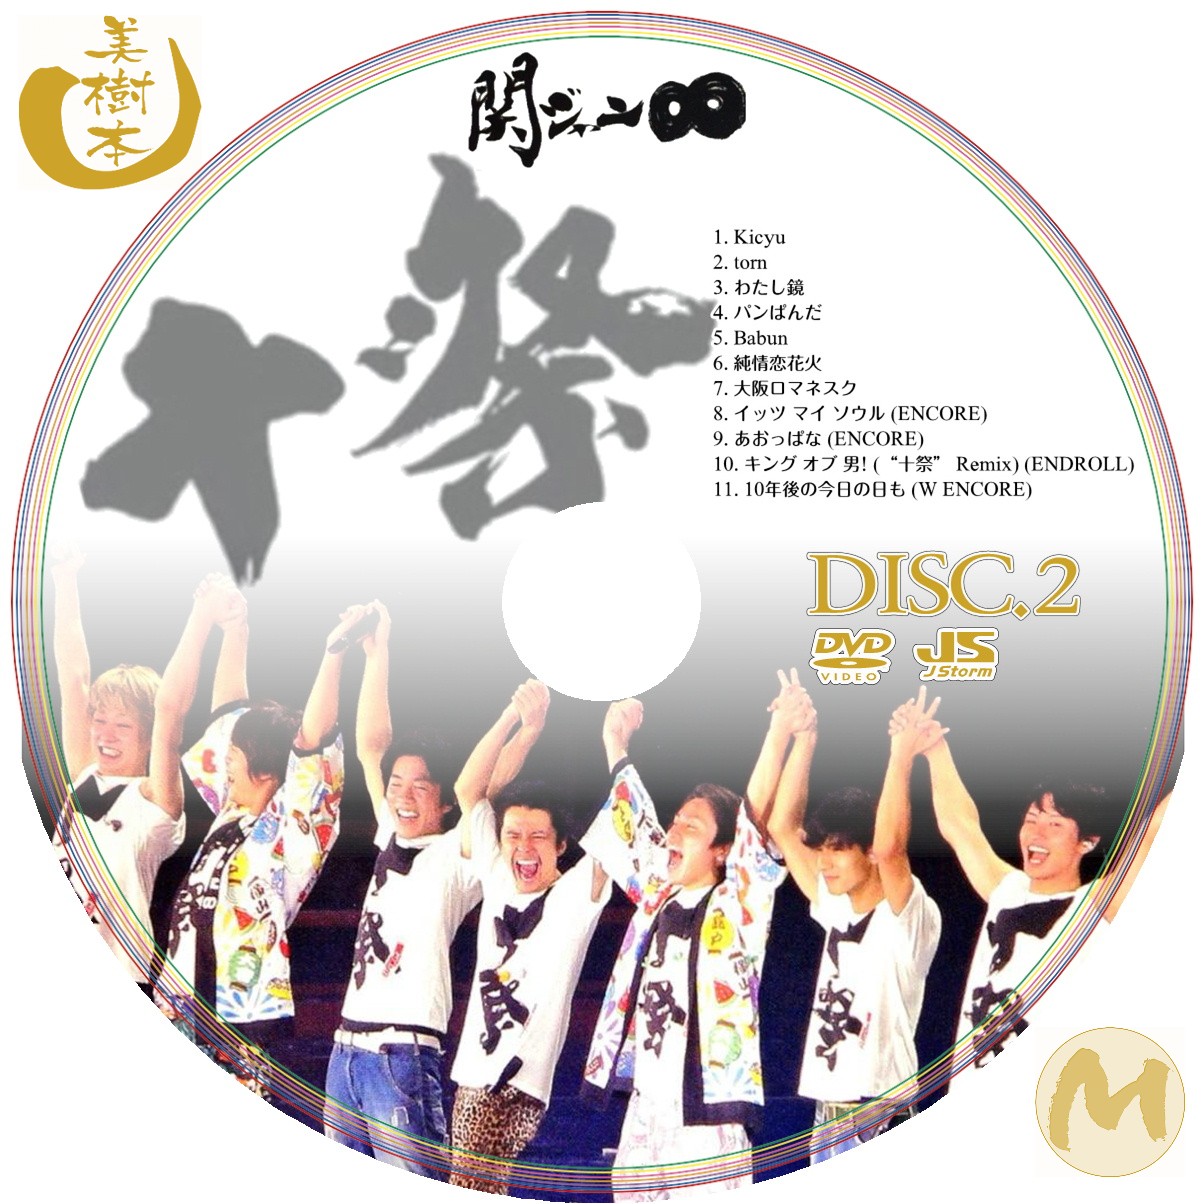 関ジャニ∞ 十祭 DVD - ブルーレイ